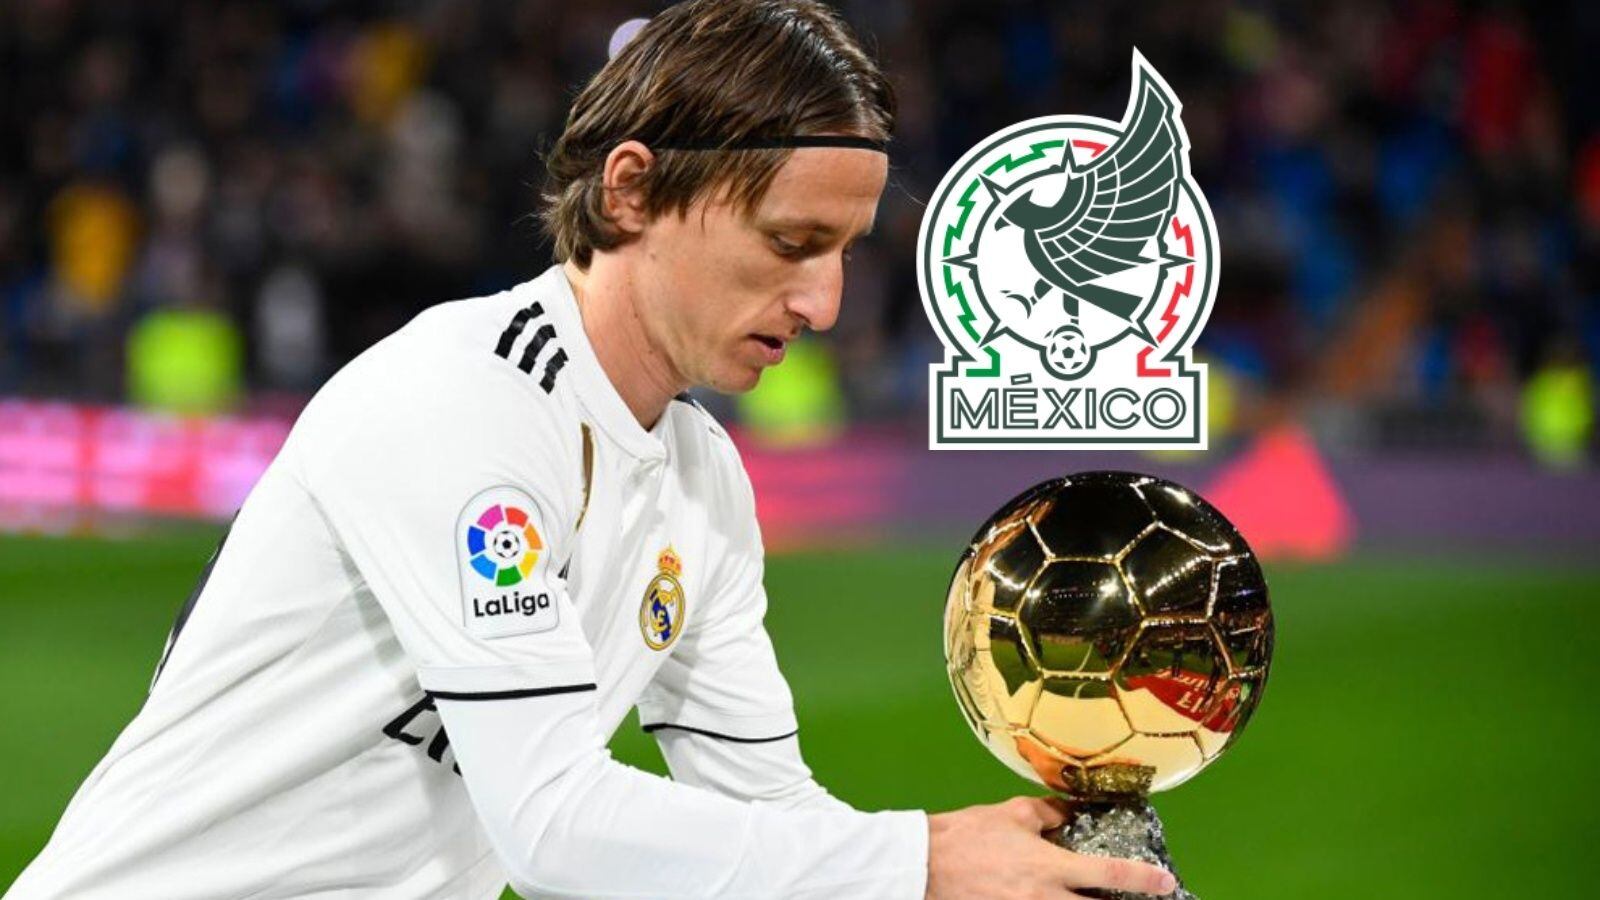 El mejor jugador mexicano al que Luka Modric considera; hasta le dio un regalo